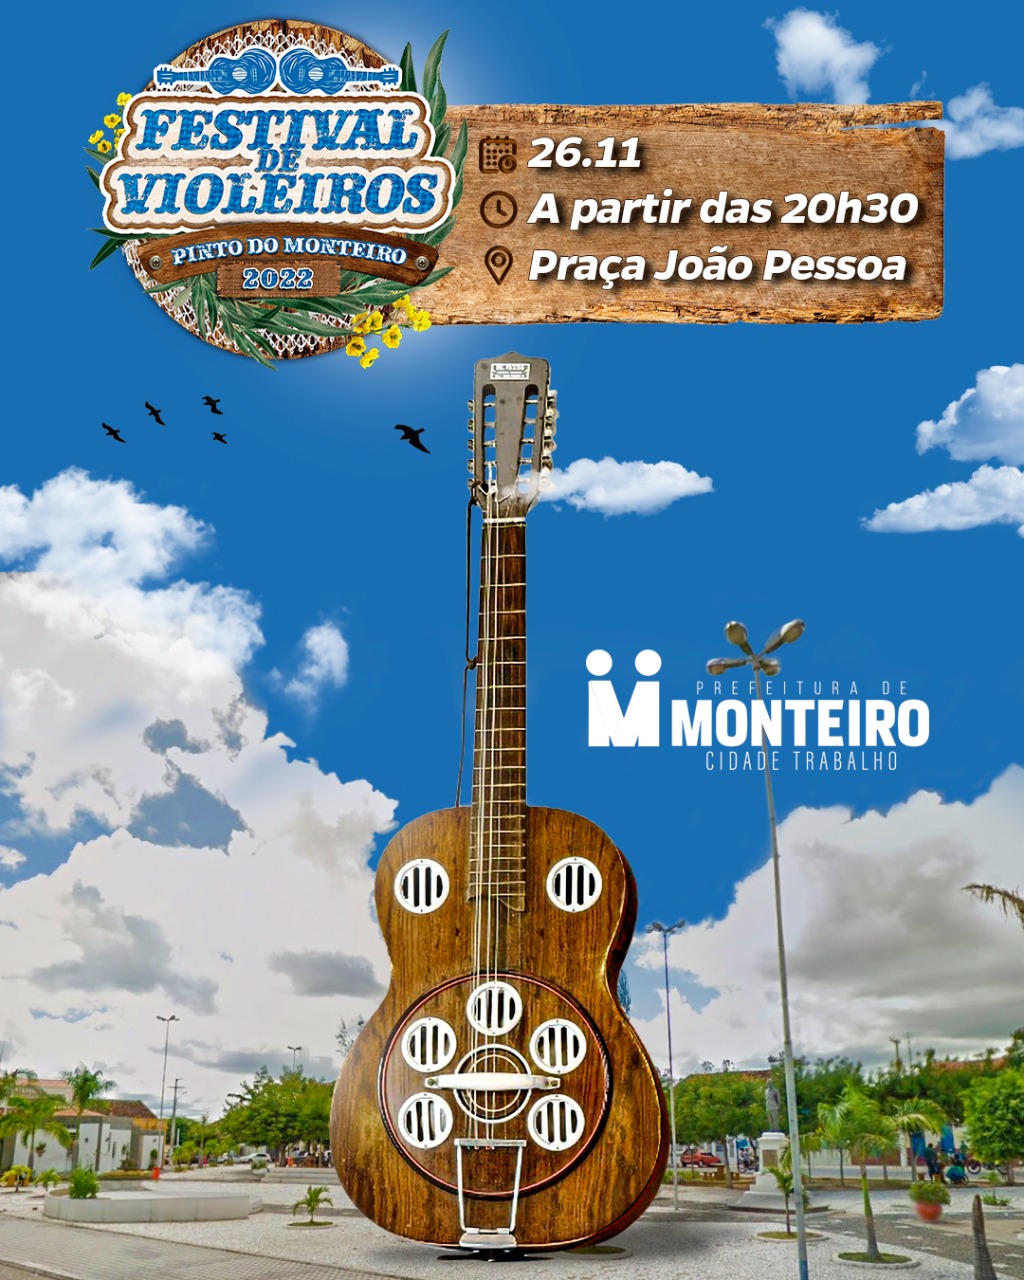 Monteiro reúne maiores nomes da cantoria no Festival de Violeiros Pinto de Monteiro